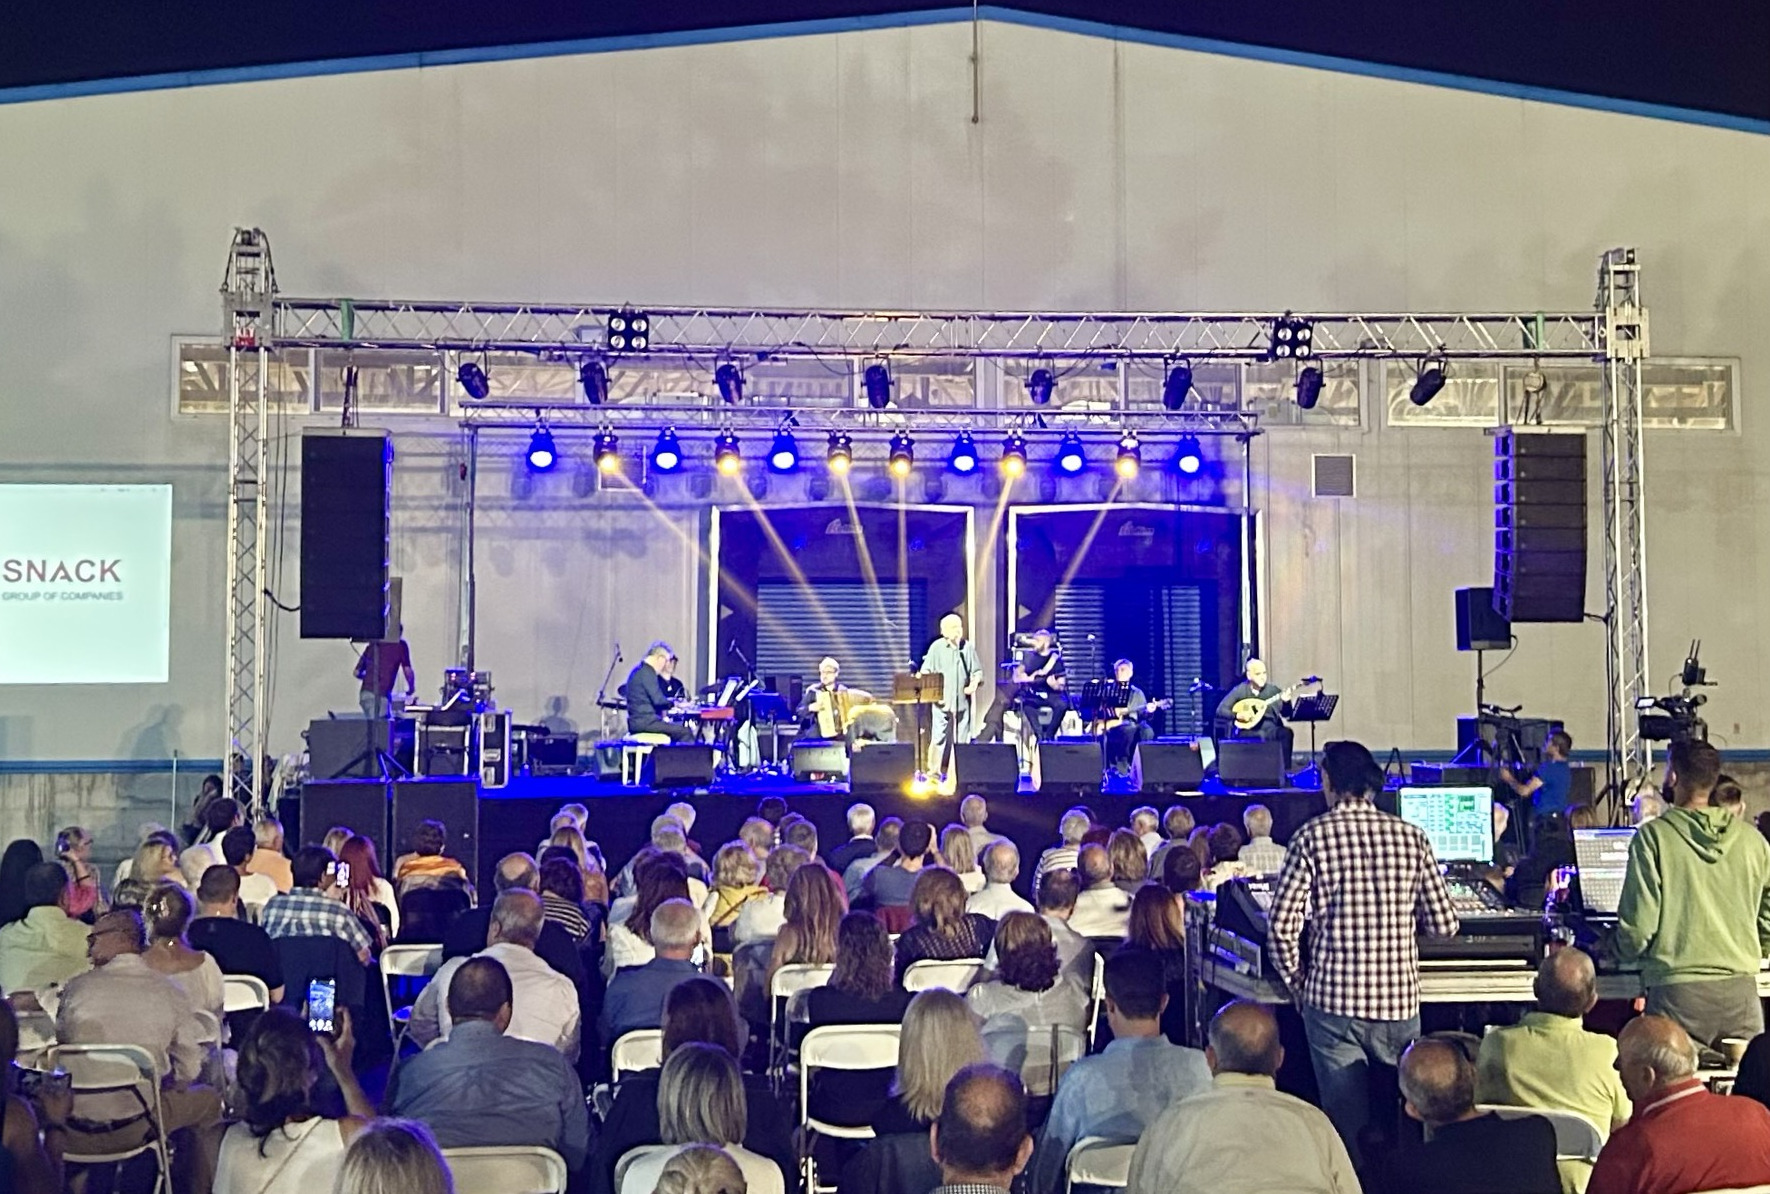 Θεσσαλονίκη: Εταιρεία οργάνωσε για τους εργαζόμενους συναυλία με τον Μανώλη Μητσιά